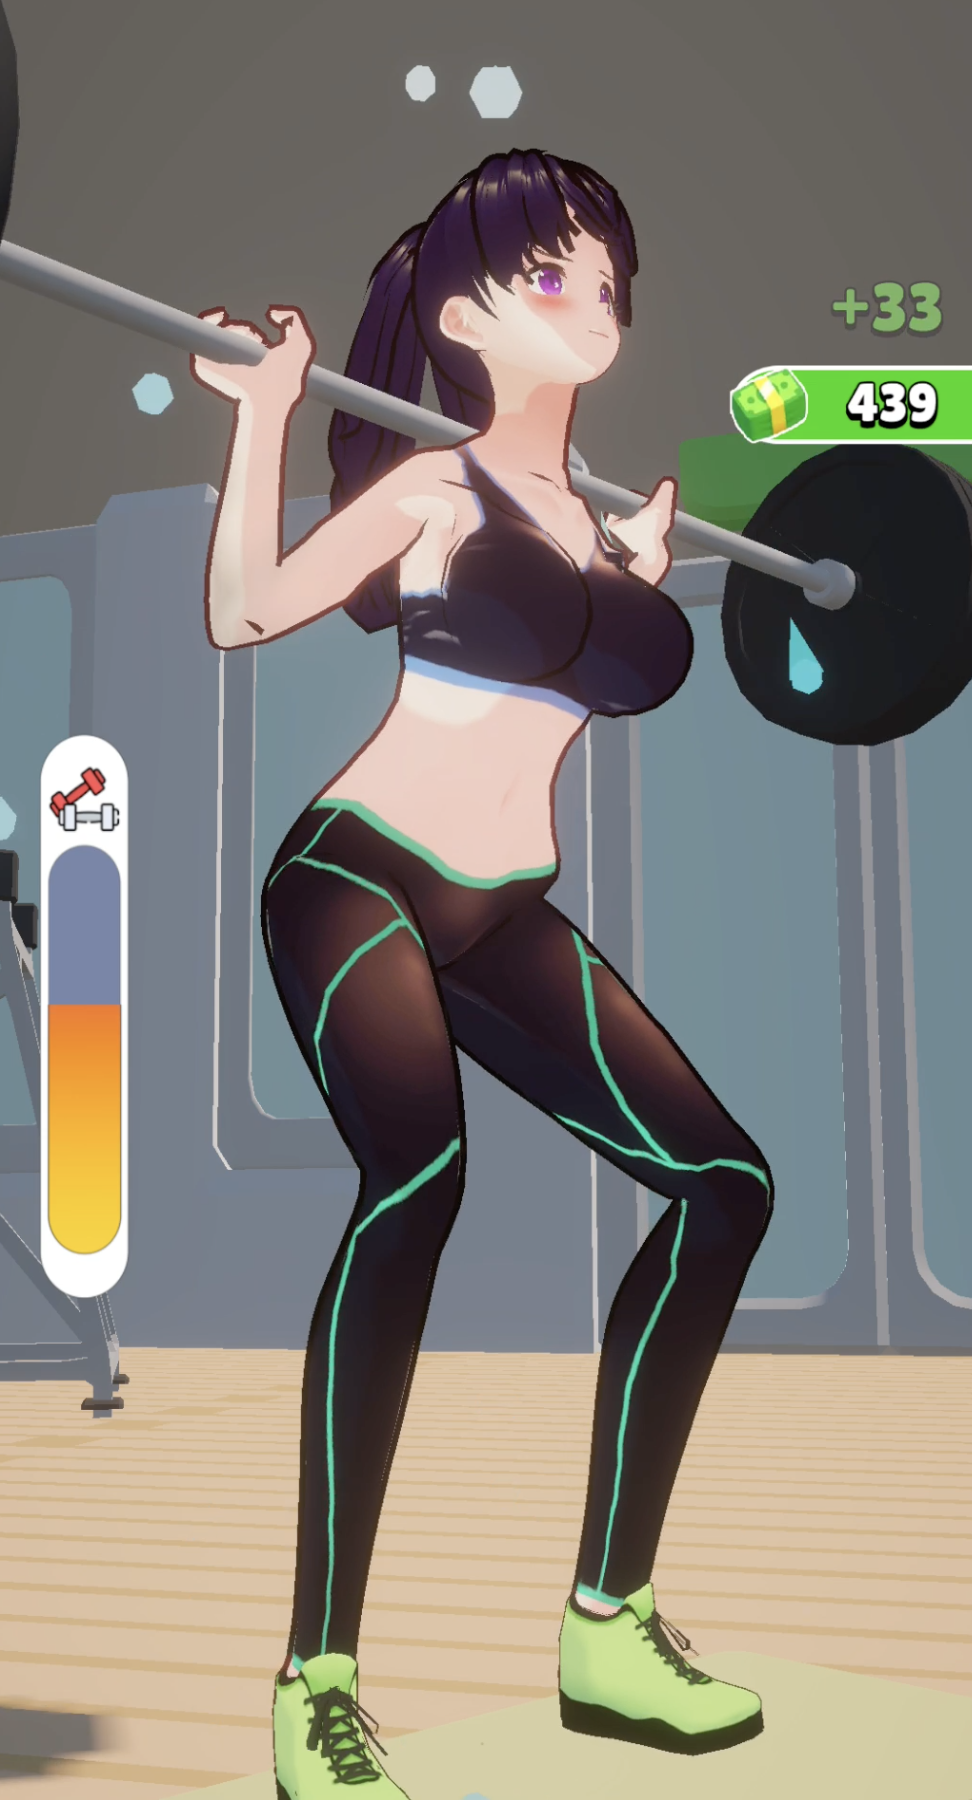 Gym Girl Anime Girl Poster | eBay